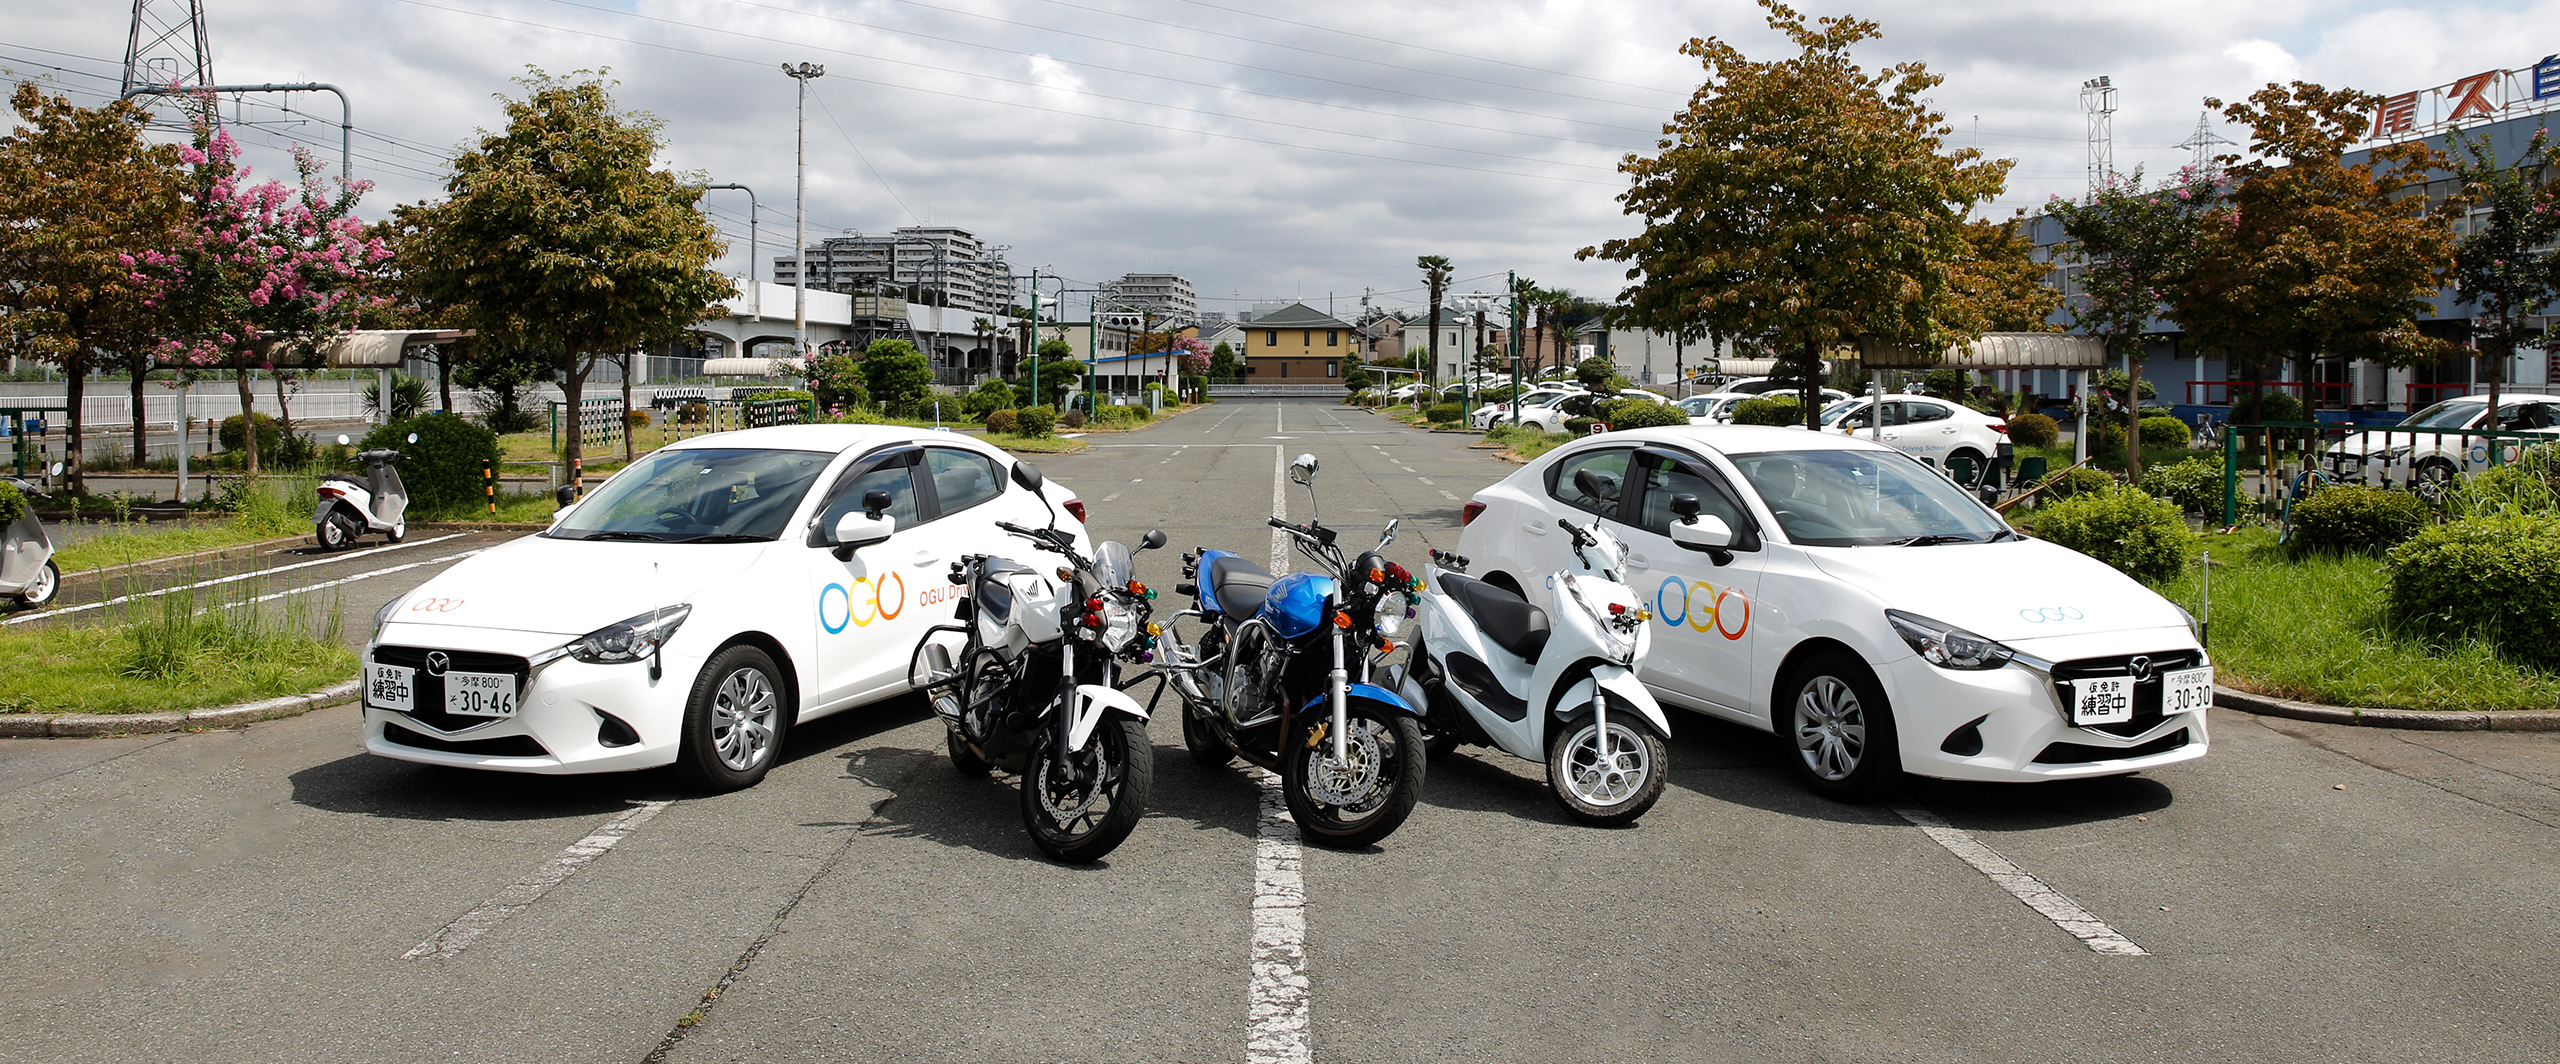 小金井市の教習所なら尾久自動車学校 指定 東京 小金井市の自動車教習所